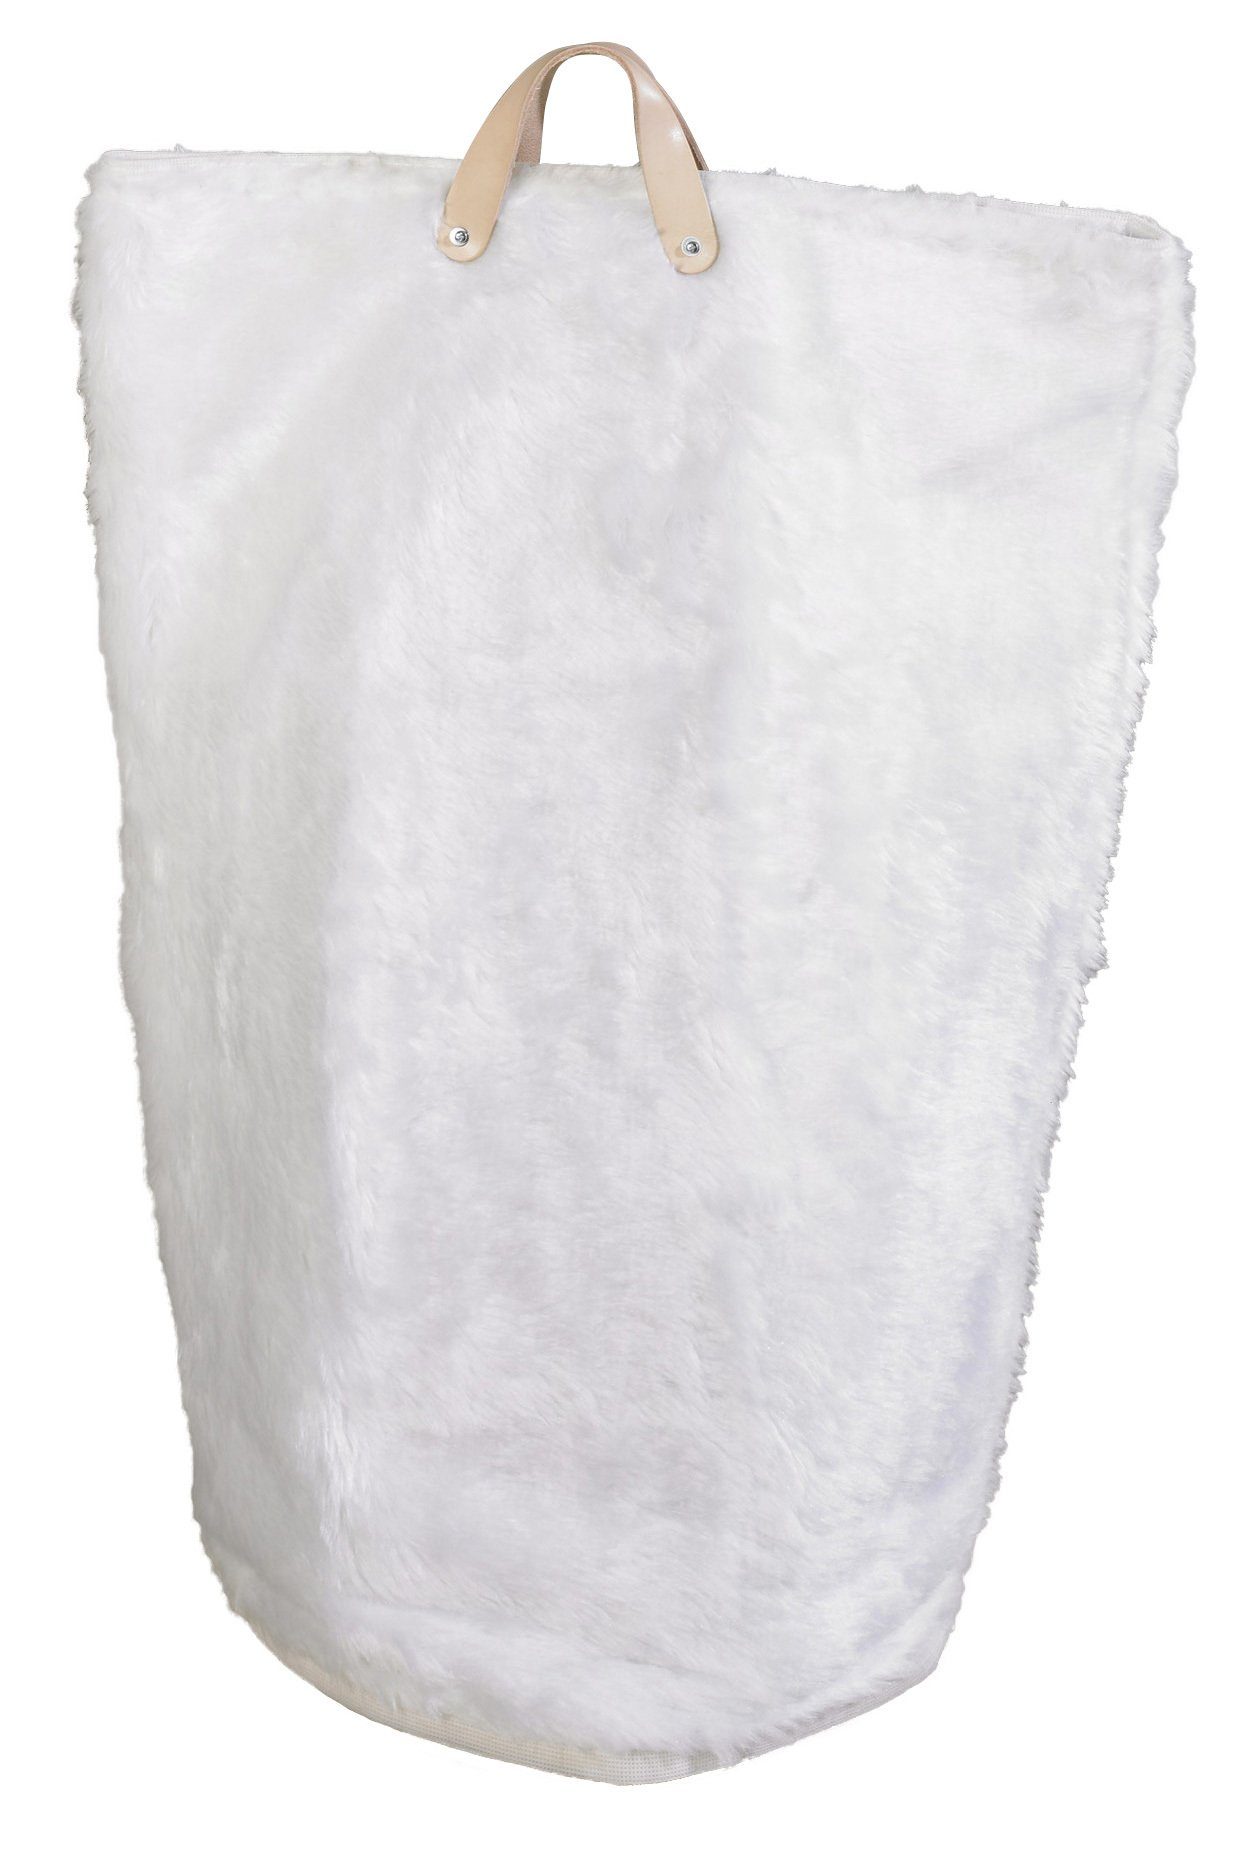 Wäschebeutel, Weiß Wäschekorb und Wäschesack, (1 St), ARTRA in "Maja" Multifunktionstasche Wäschesammler Fellimitat Wäschetaschen Bad Wäschetasche